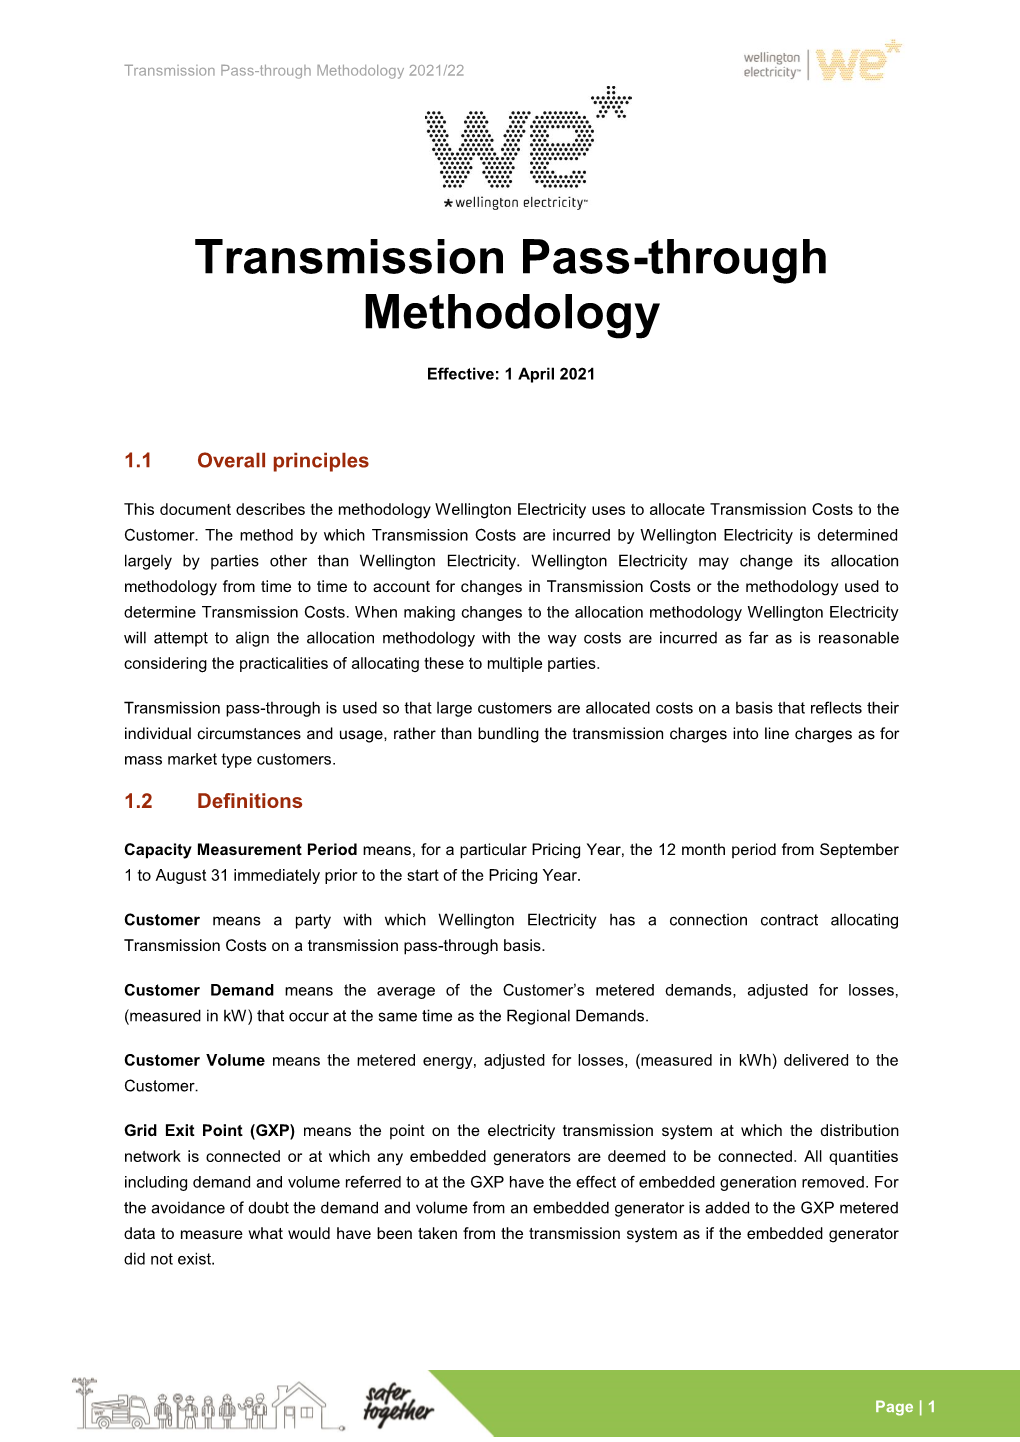 Transmission Pass-Through Methodology 2021/22